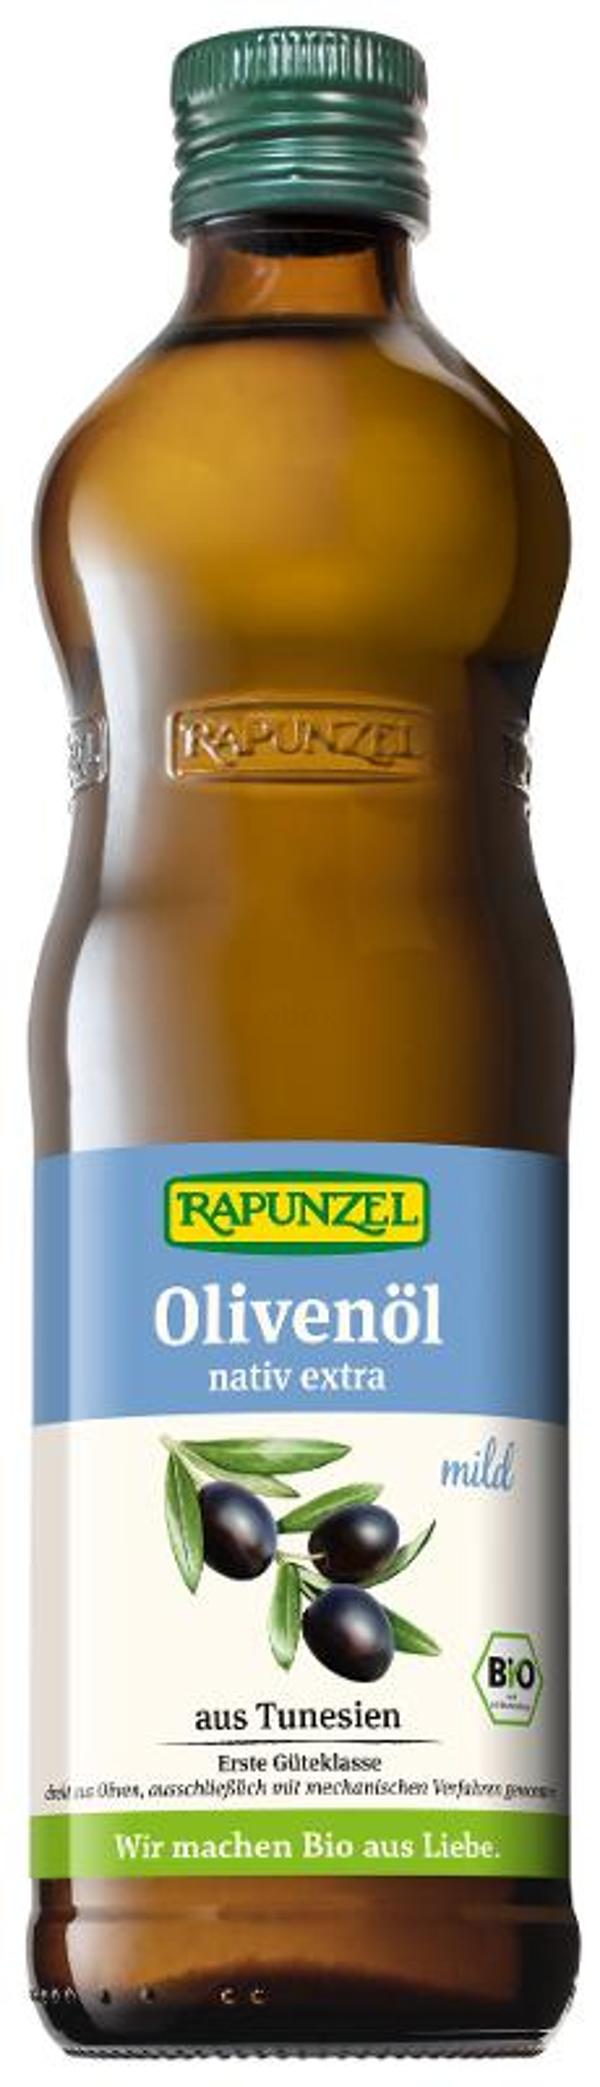 Produktfoto zu Rapunzel Olivenöl mild, nativ extra - 0,5l